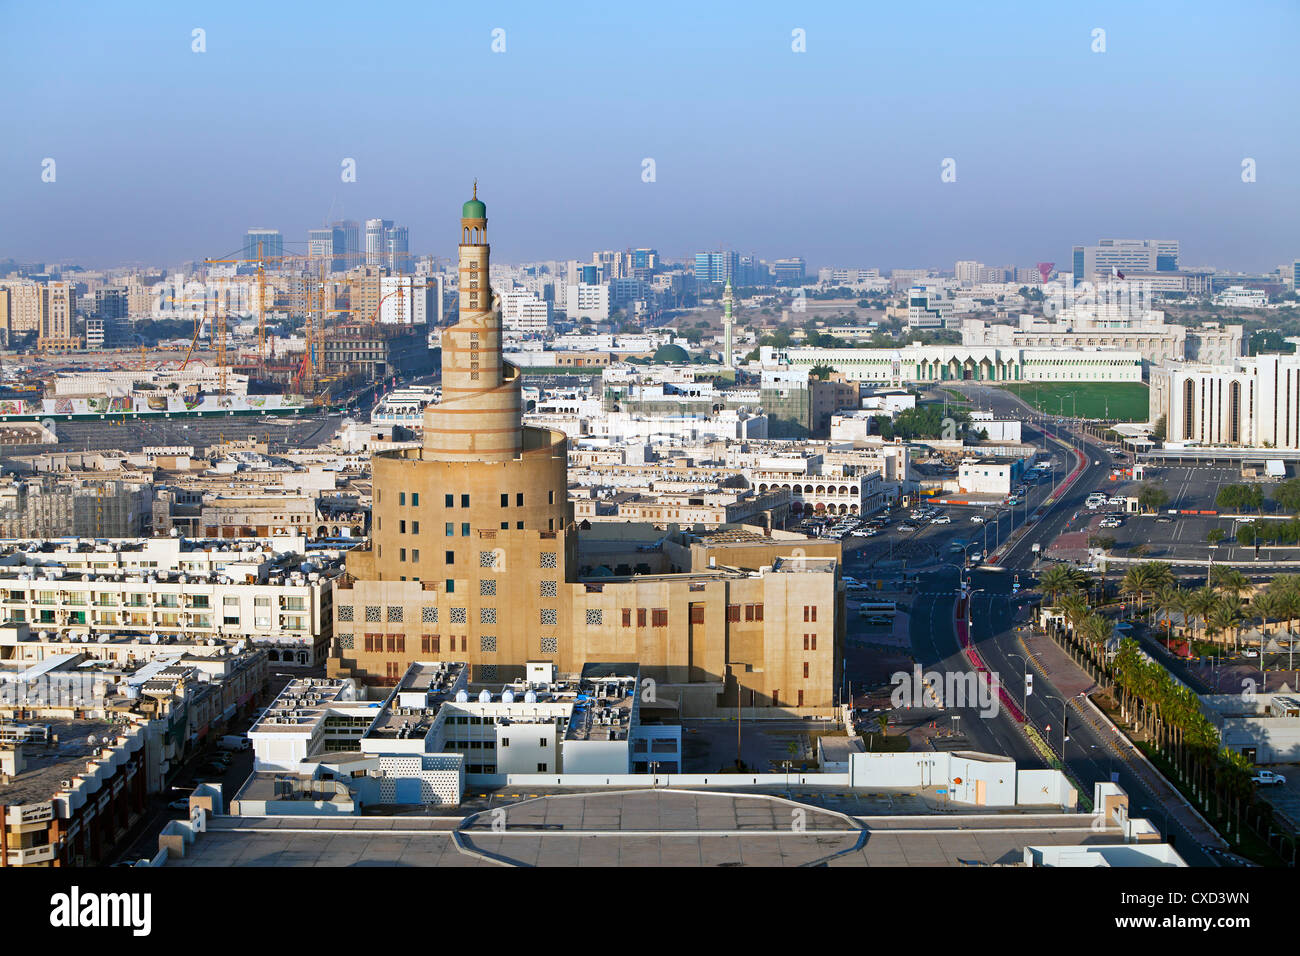 La spirale de la mosquée Kassem Darwish Fakhroo Centre islamique de Doha, Doha, Qatar, Moyen-Orient Banque D'Images